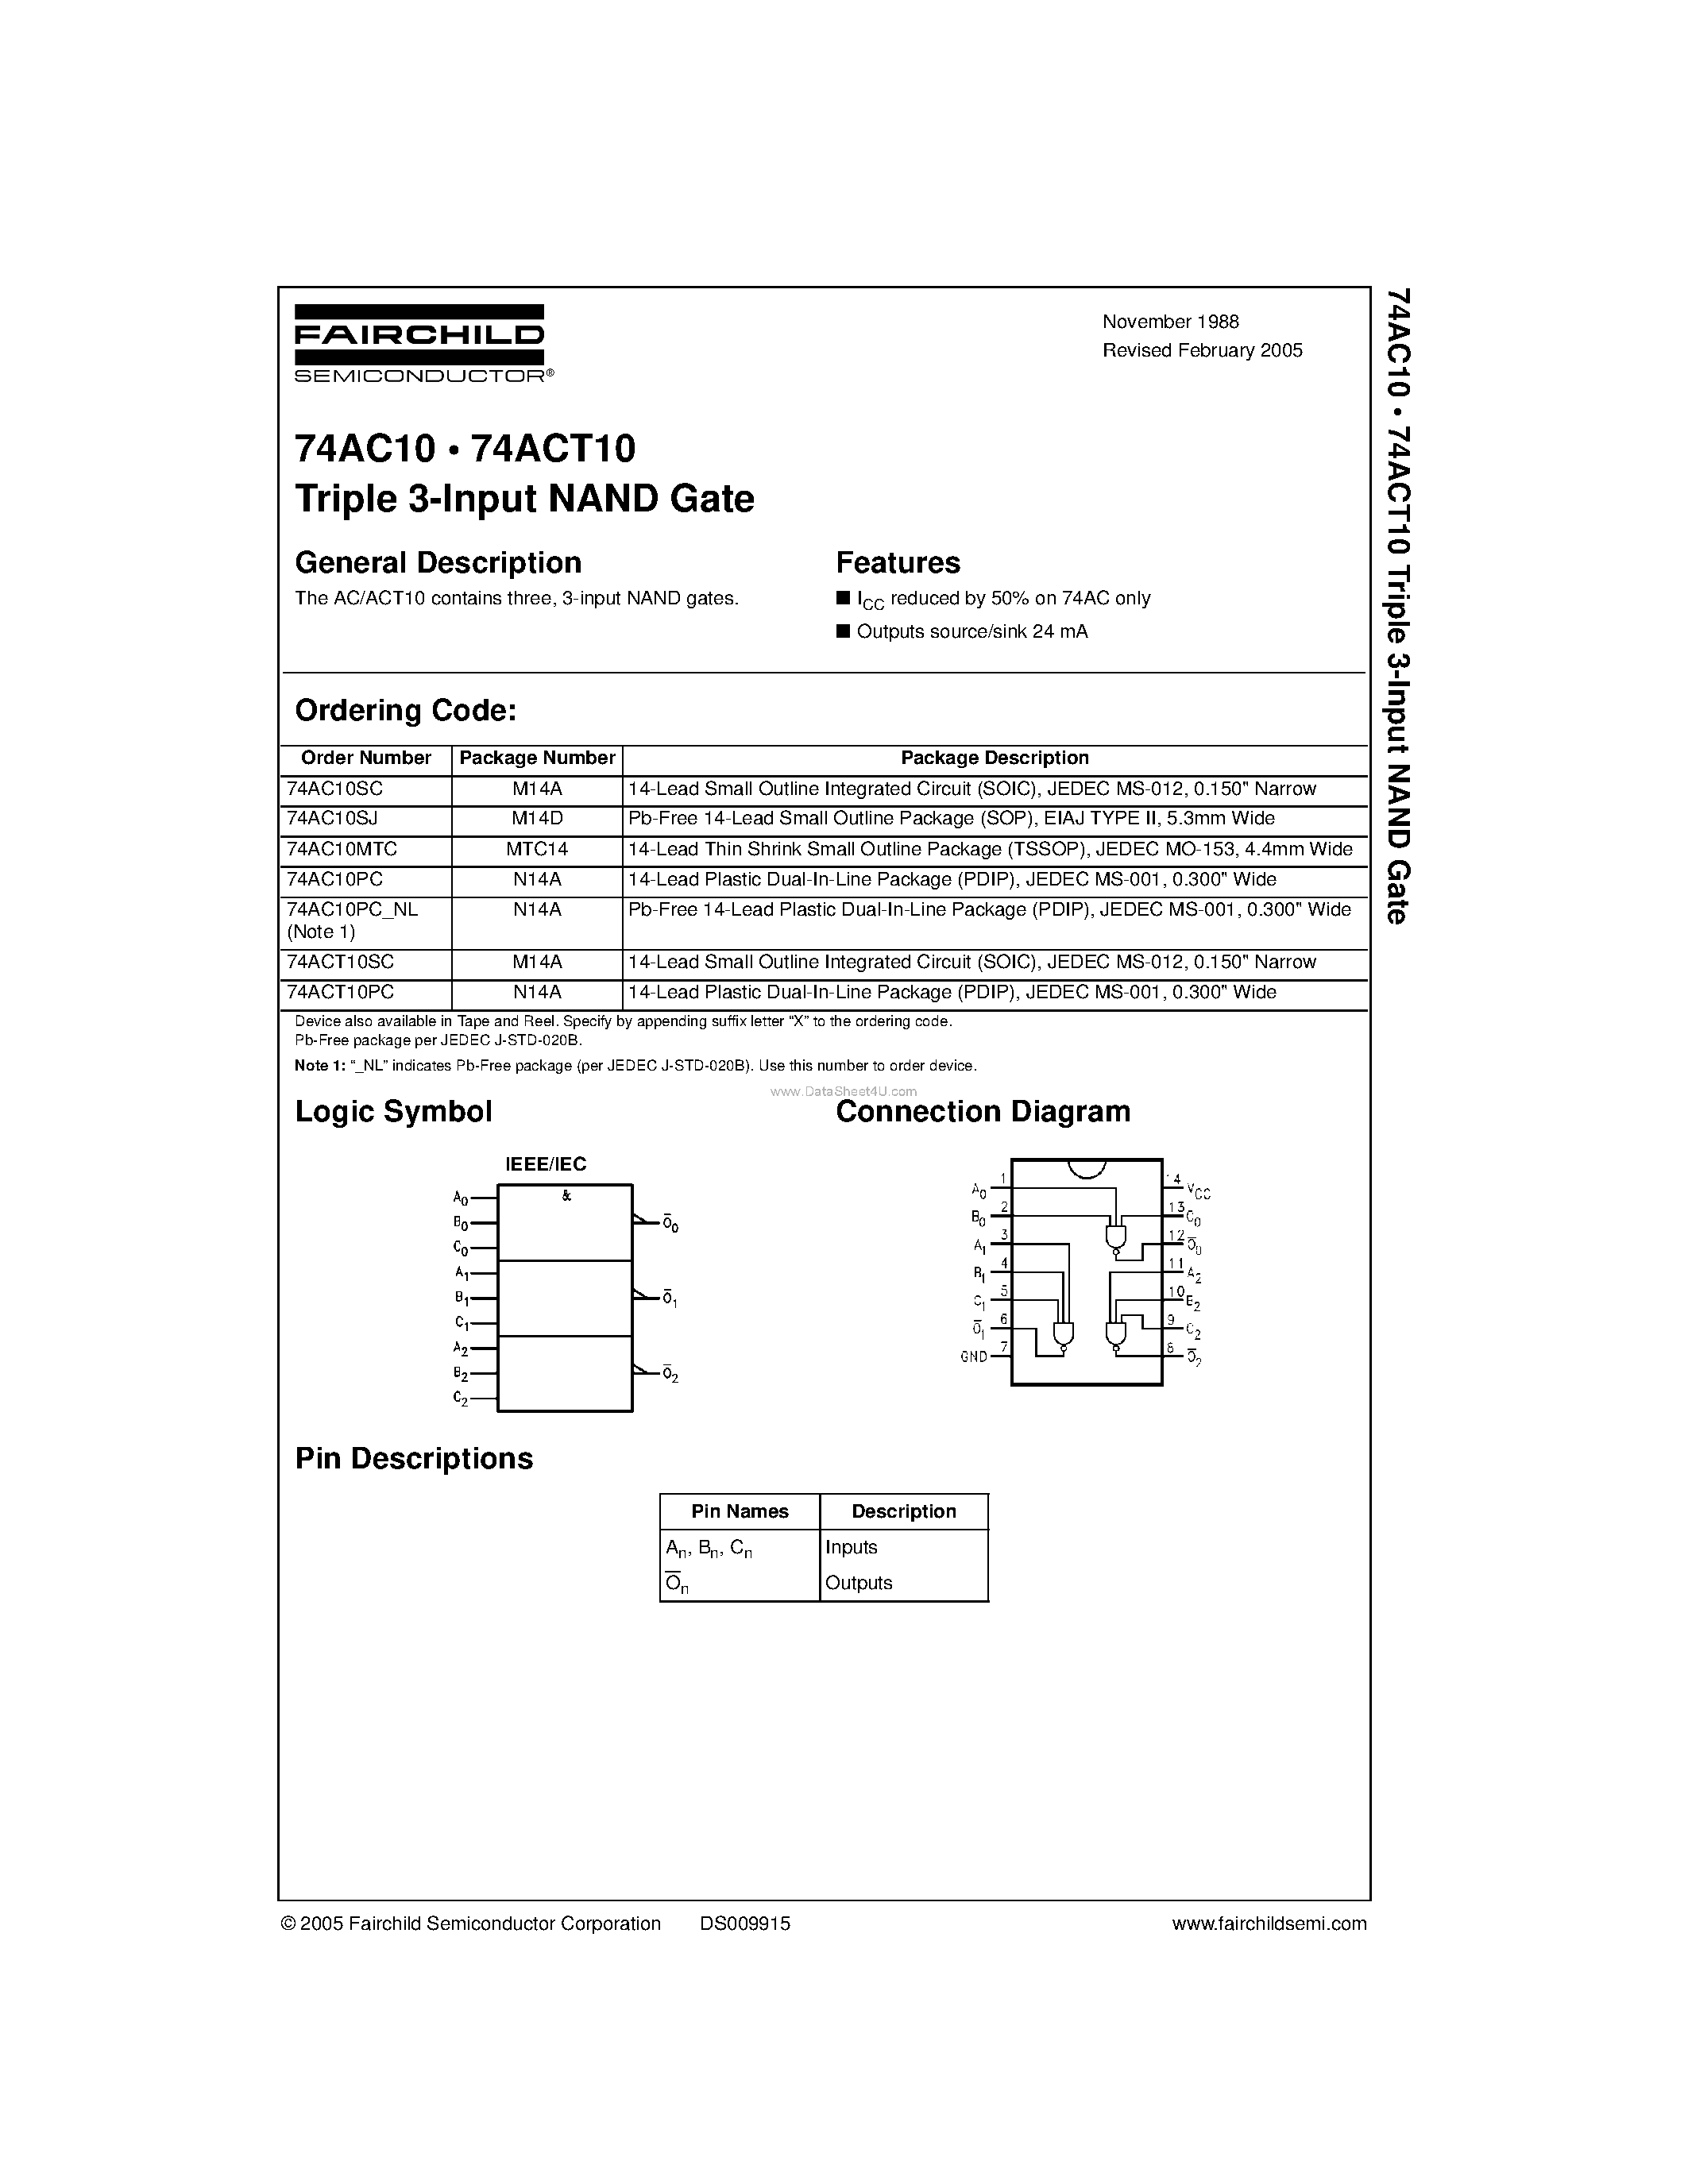 Datasheet 74AC10PC - Triple 3-Input NAND Gate page 1